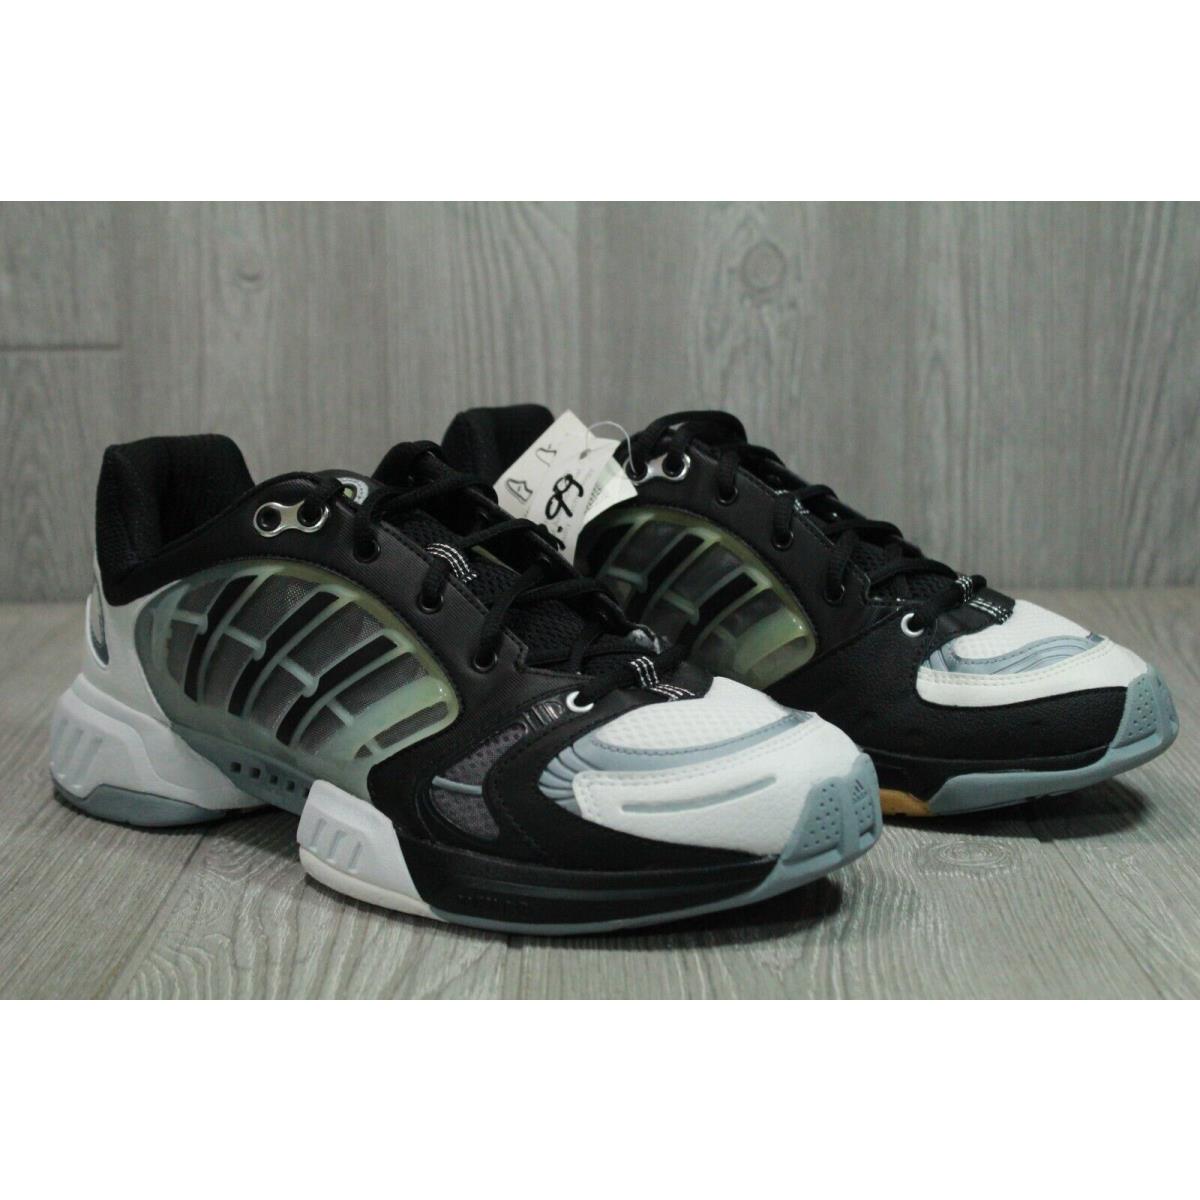 Adidas shoes  - Black 1